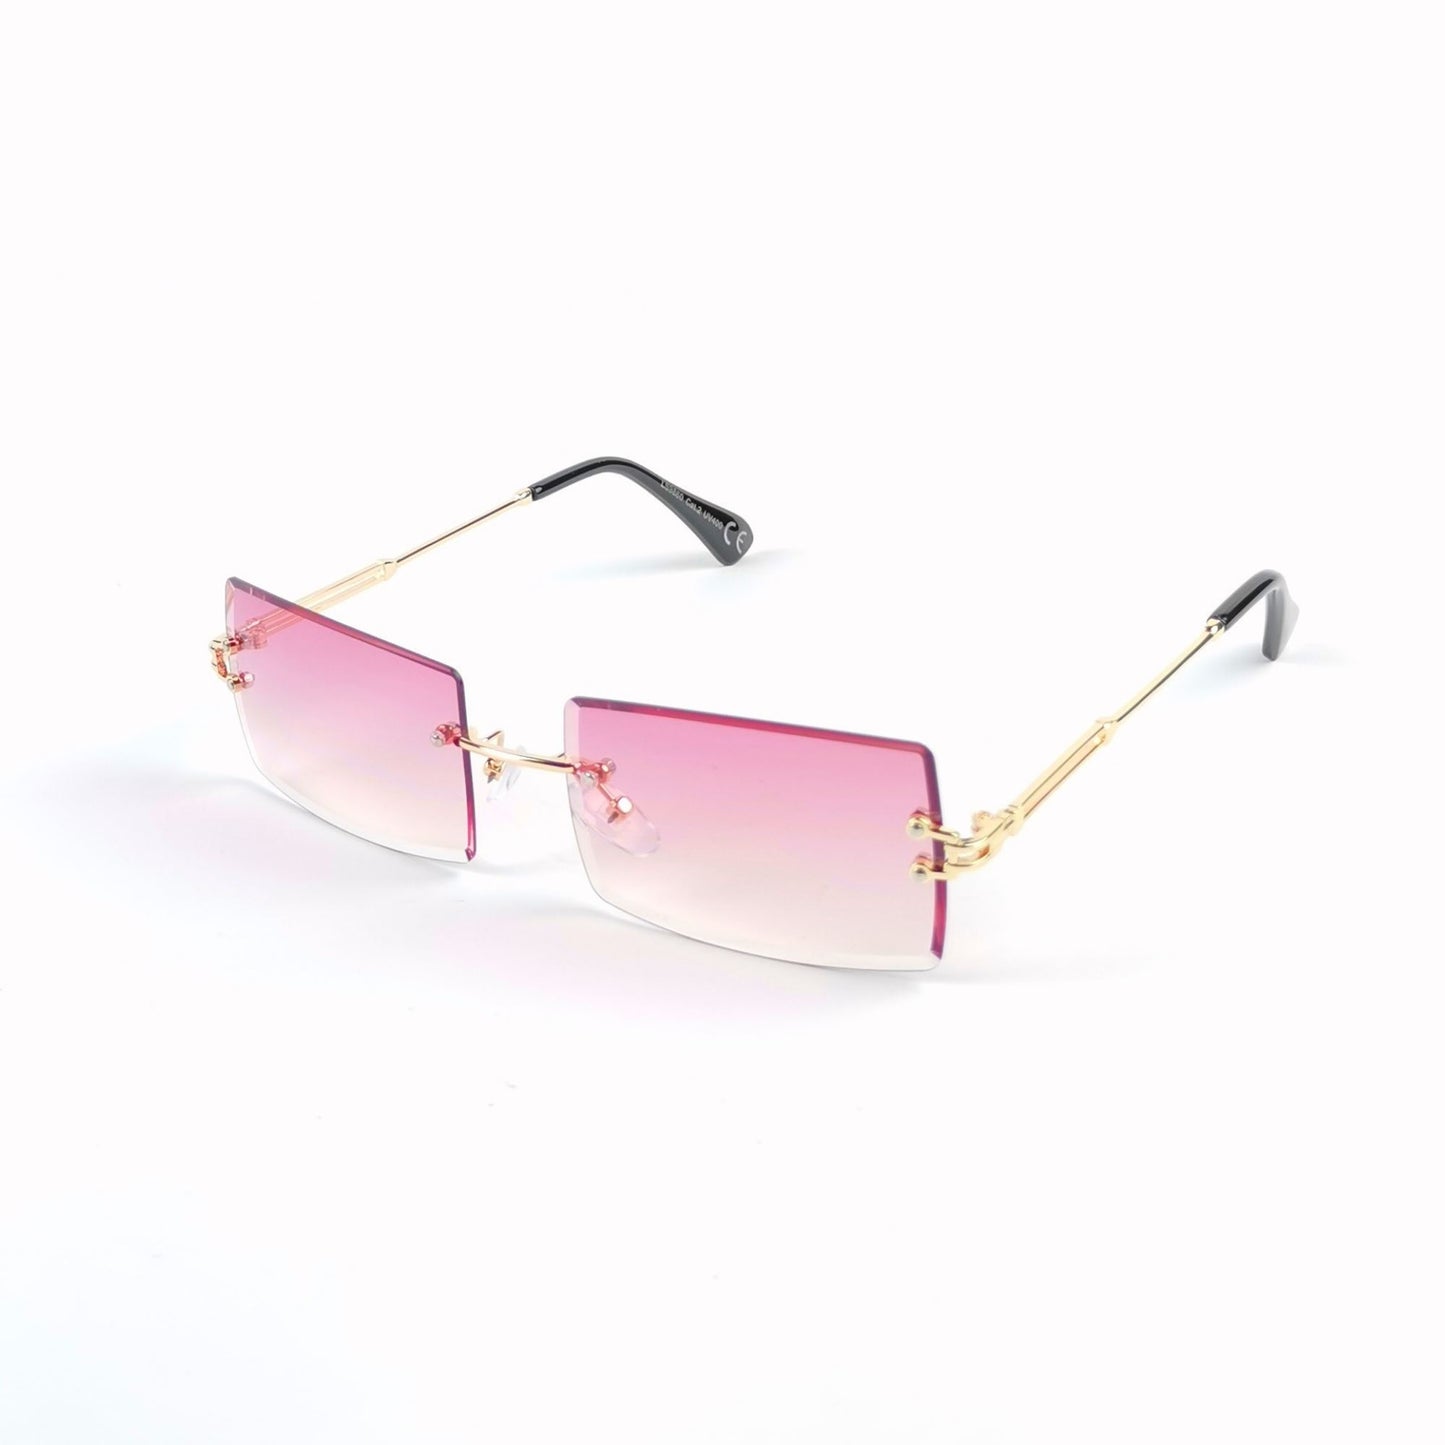 Sunčane naočale /multicolored KIKY pink 